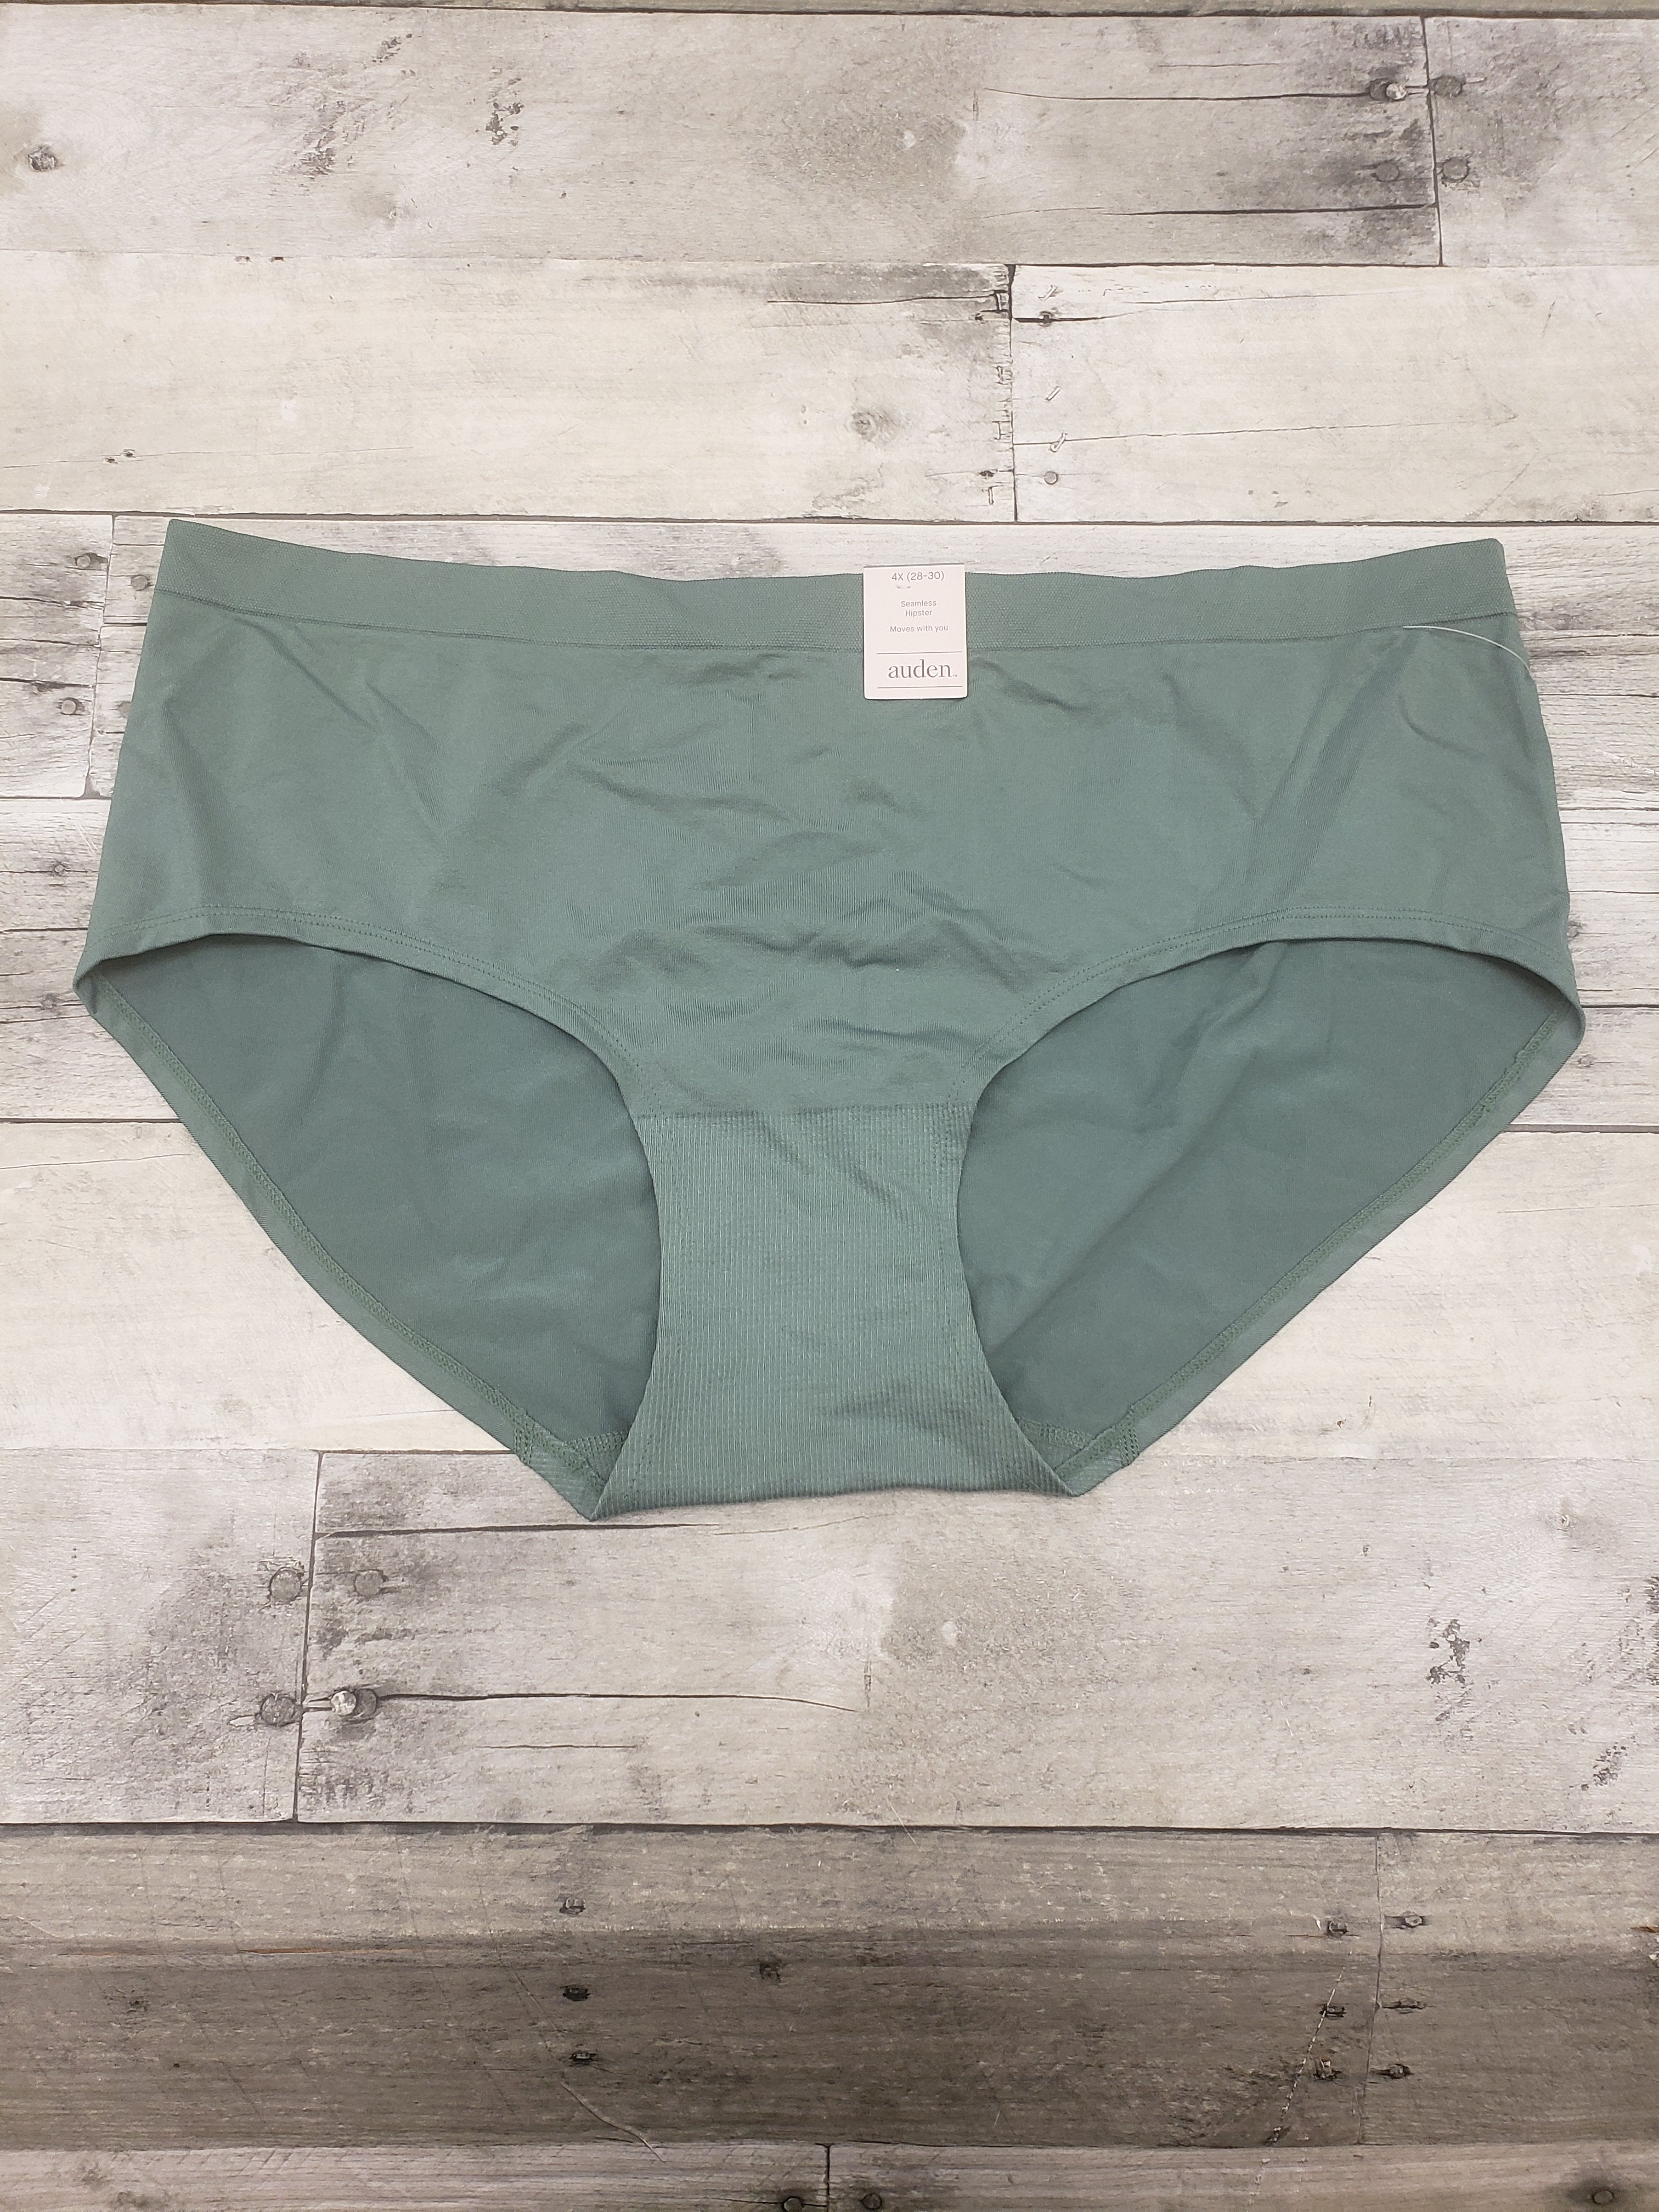 Auden Hipster Underwear Seafoam Green 4x (28-30) New – Clothes